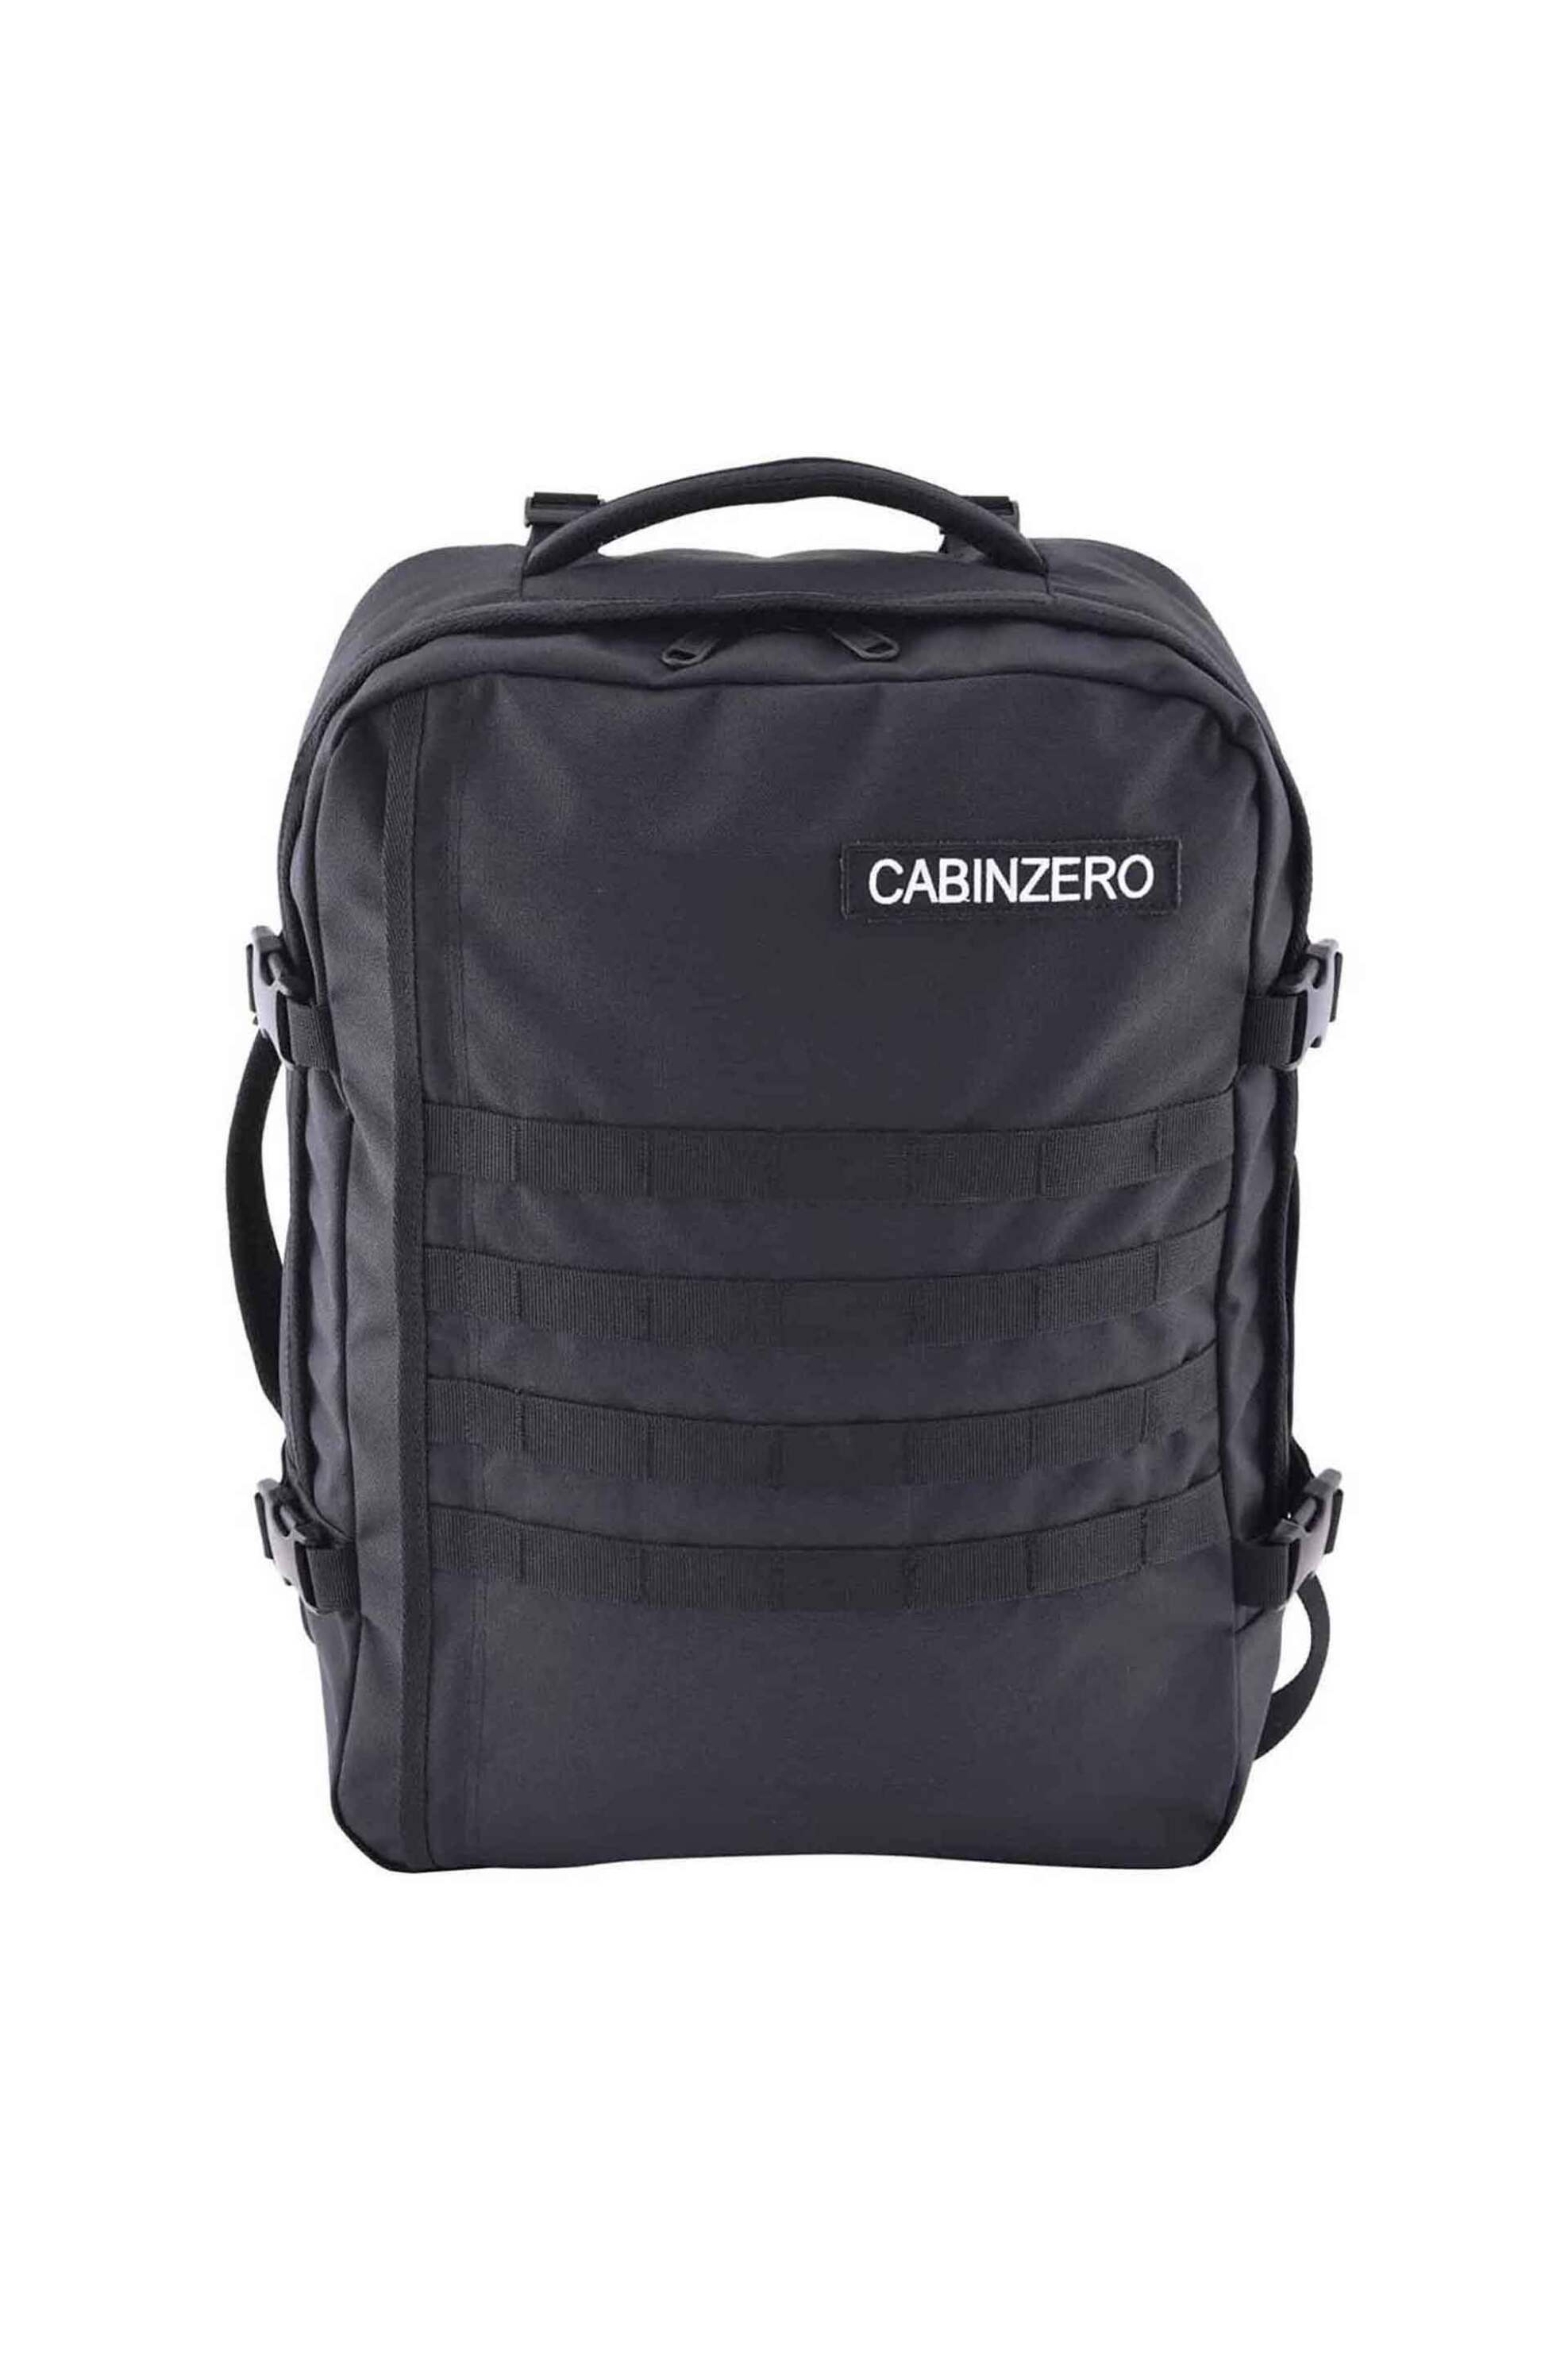 Ανδρική Μόδα > Ανδρικές Τσάντες > Ανδρικά Σακίδια & Backpacks Cabin Zero unisex backpack μονόχρωμο με πλέγμα μπροστά και logo patch "Military 36L" - CZ181401